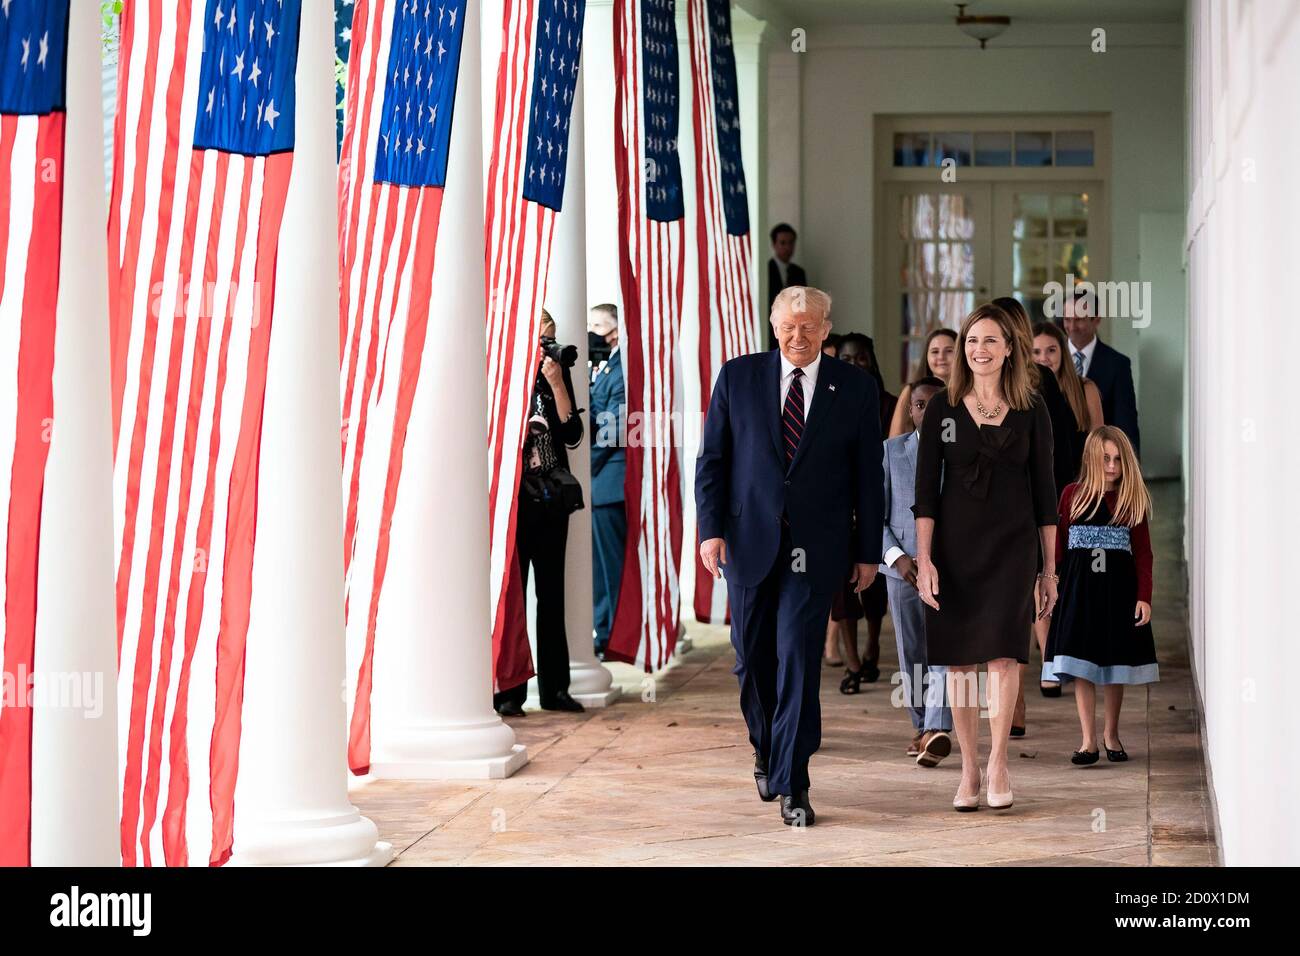 Il presidente Donald J. Trump cammina con il giudice Amy Coney Barrett, il suo candidato per la Giustizia associata della Corte Suprema degli Stati Uniti, lungo la West Wing Colonnade sabato 26 settembre 2020, dopo le cerimonie di annuncio nel Rose Garden. (STATI UNITI) Foto Stock